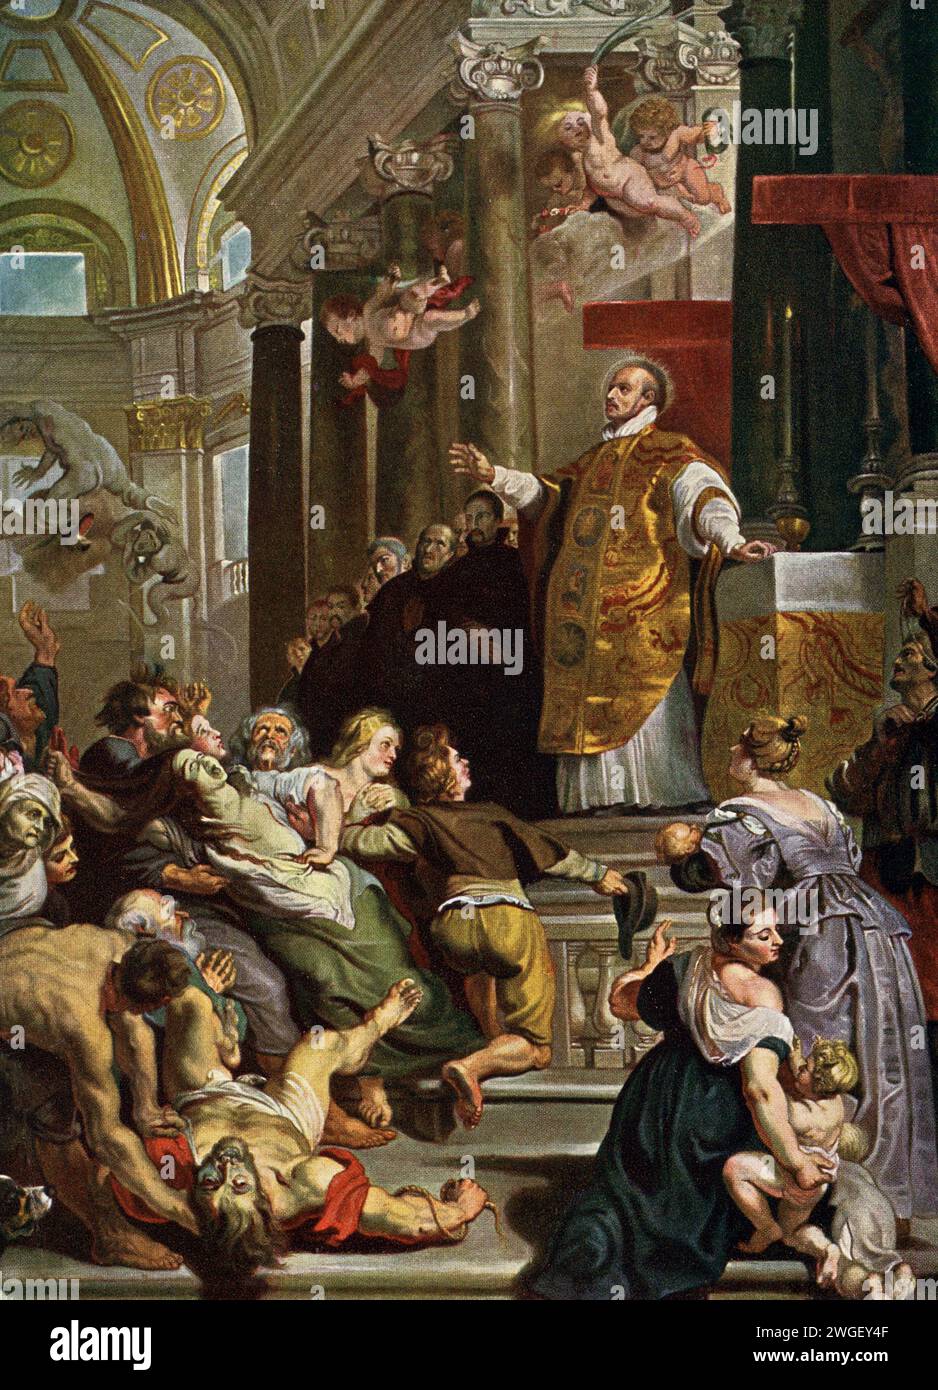 Questo dipinto di Peter Paul Rubens (1577-1640) mostra Ignazio Loyola guarire coloro che sono ossessionati. È spesso intitolato: Miracoli di Sant'Ignazio di Loyola. Era appeso in Belgio sull'altare maggiore della Chiesa gesuita di Anversa. Ignazio di Loyola era un sacerdote e teologo cattolico spagnolo, che, con sei compagni. Fondò l'ordine religioso della compagnia di Gesù e divenne il suo primo superiore generale a Parigi nel 1541. Peter Paul Rubens (– 1640) è stato un artista e diplomatico fiammingo. È considerato l'artista più influente della tradizione barocca fiamminga. Rubens e' un'azienda altamente carica Foto Stock